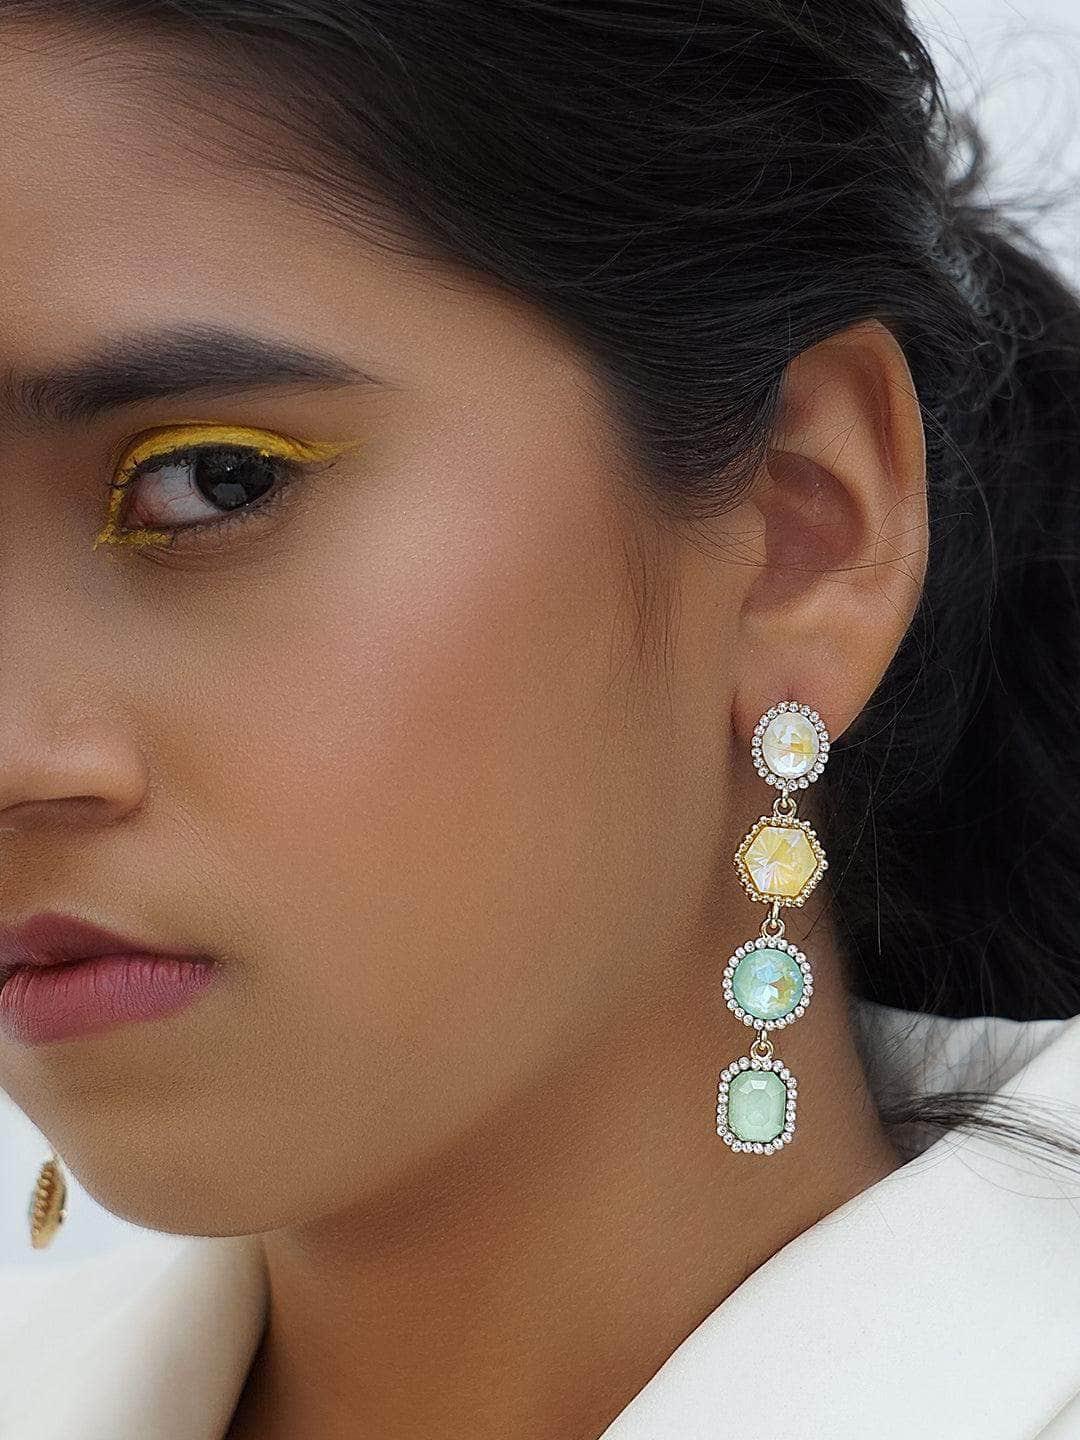 Ishhaara Sonakshi Sinha In Geometric 4 Tiered Earrings Pink